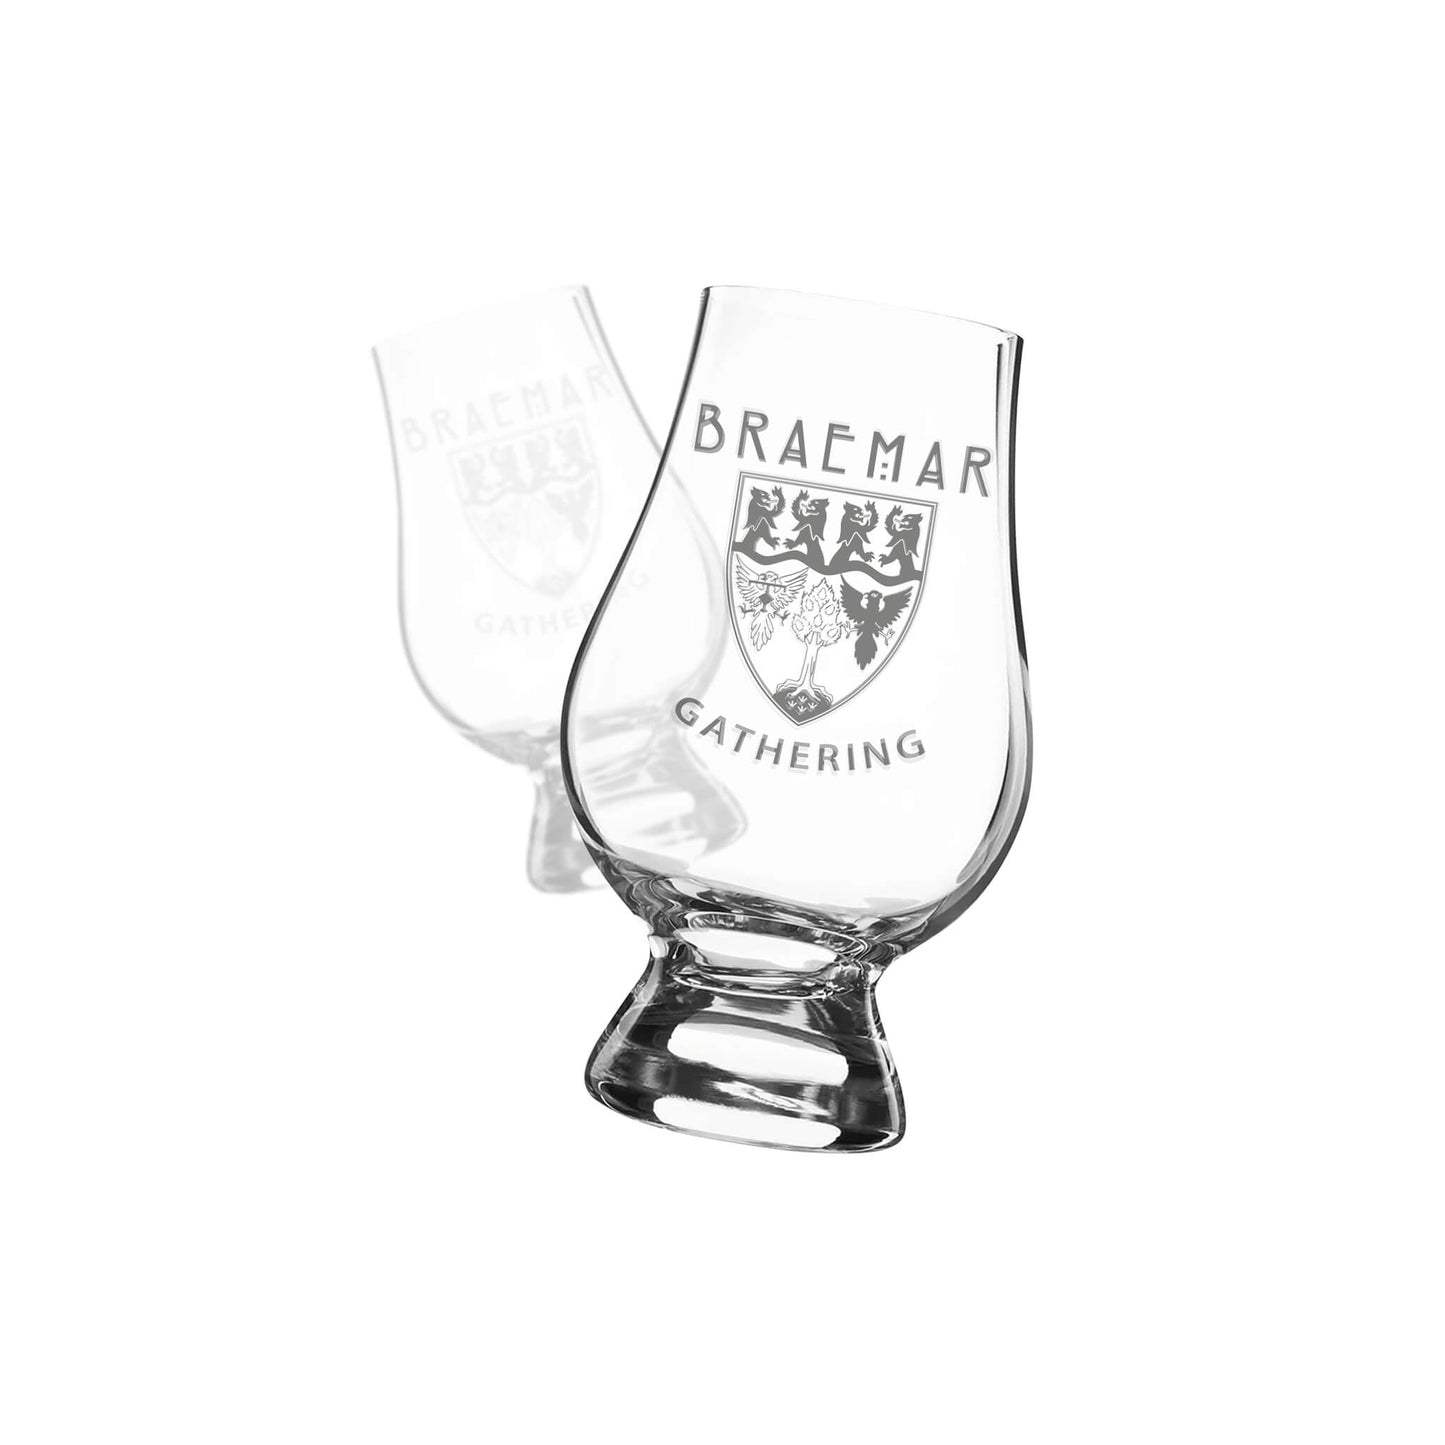 Classic Glencairn Engraved Whisky Glass | Braemar Gathering